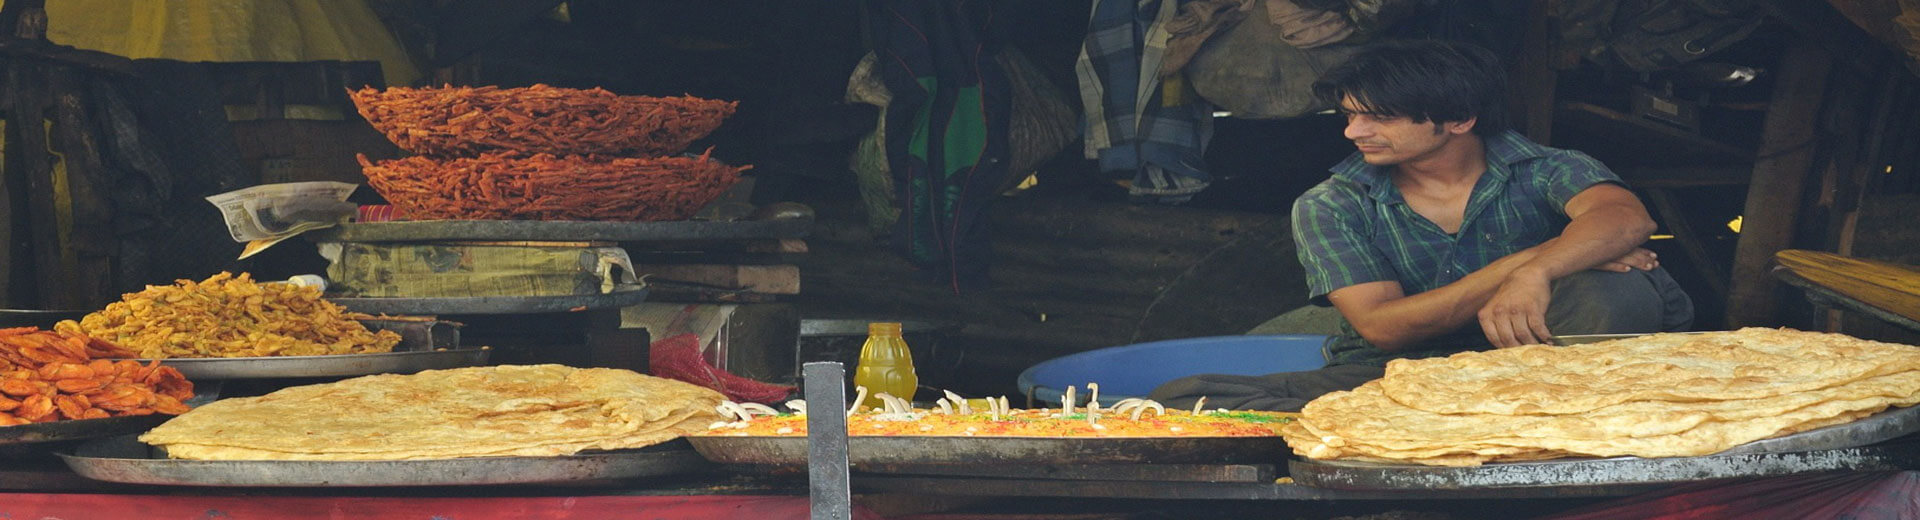 אהבה מביס ראשון- אוכל רחוב בהודו